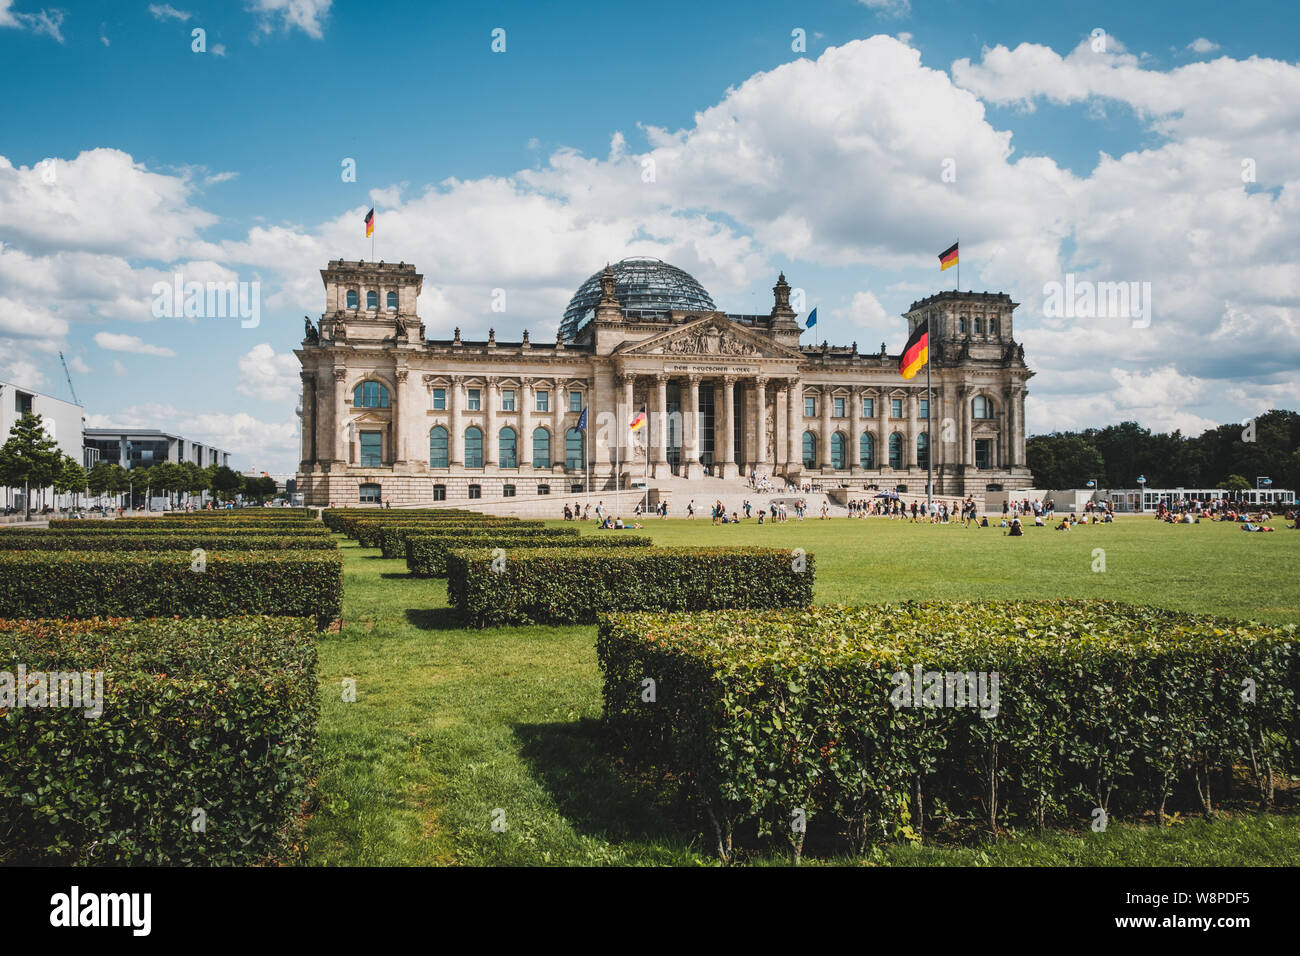 Berlin, Allemagne - Août 2019 : Le bâtiment du Reichstag (Parlement allemand) à Berlin, Allemagne Banque D'Images